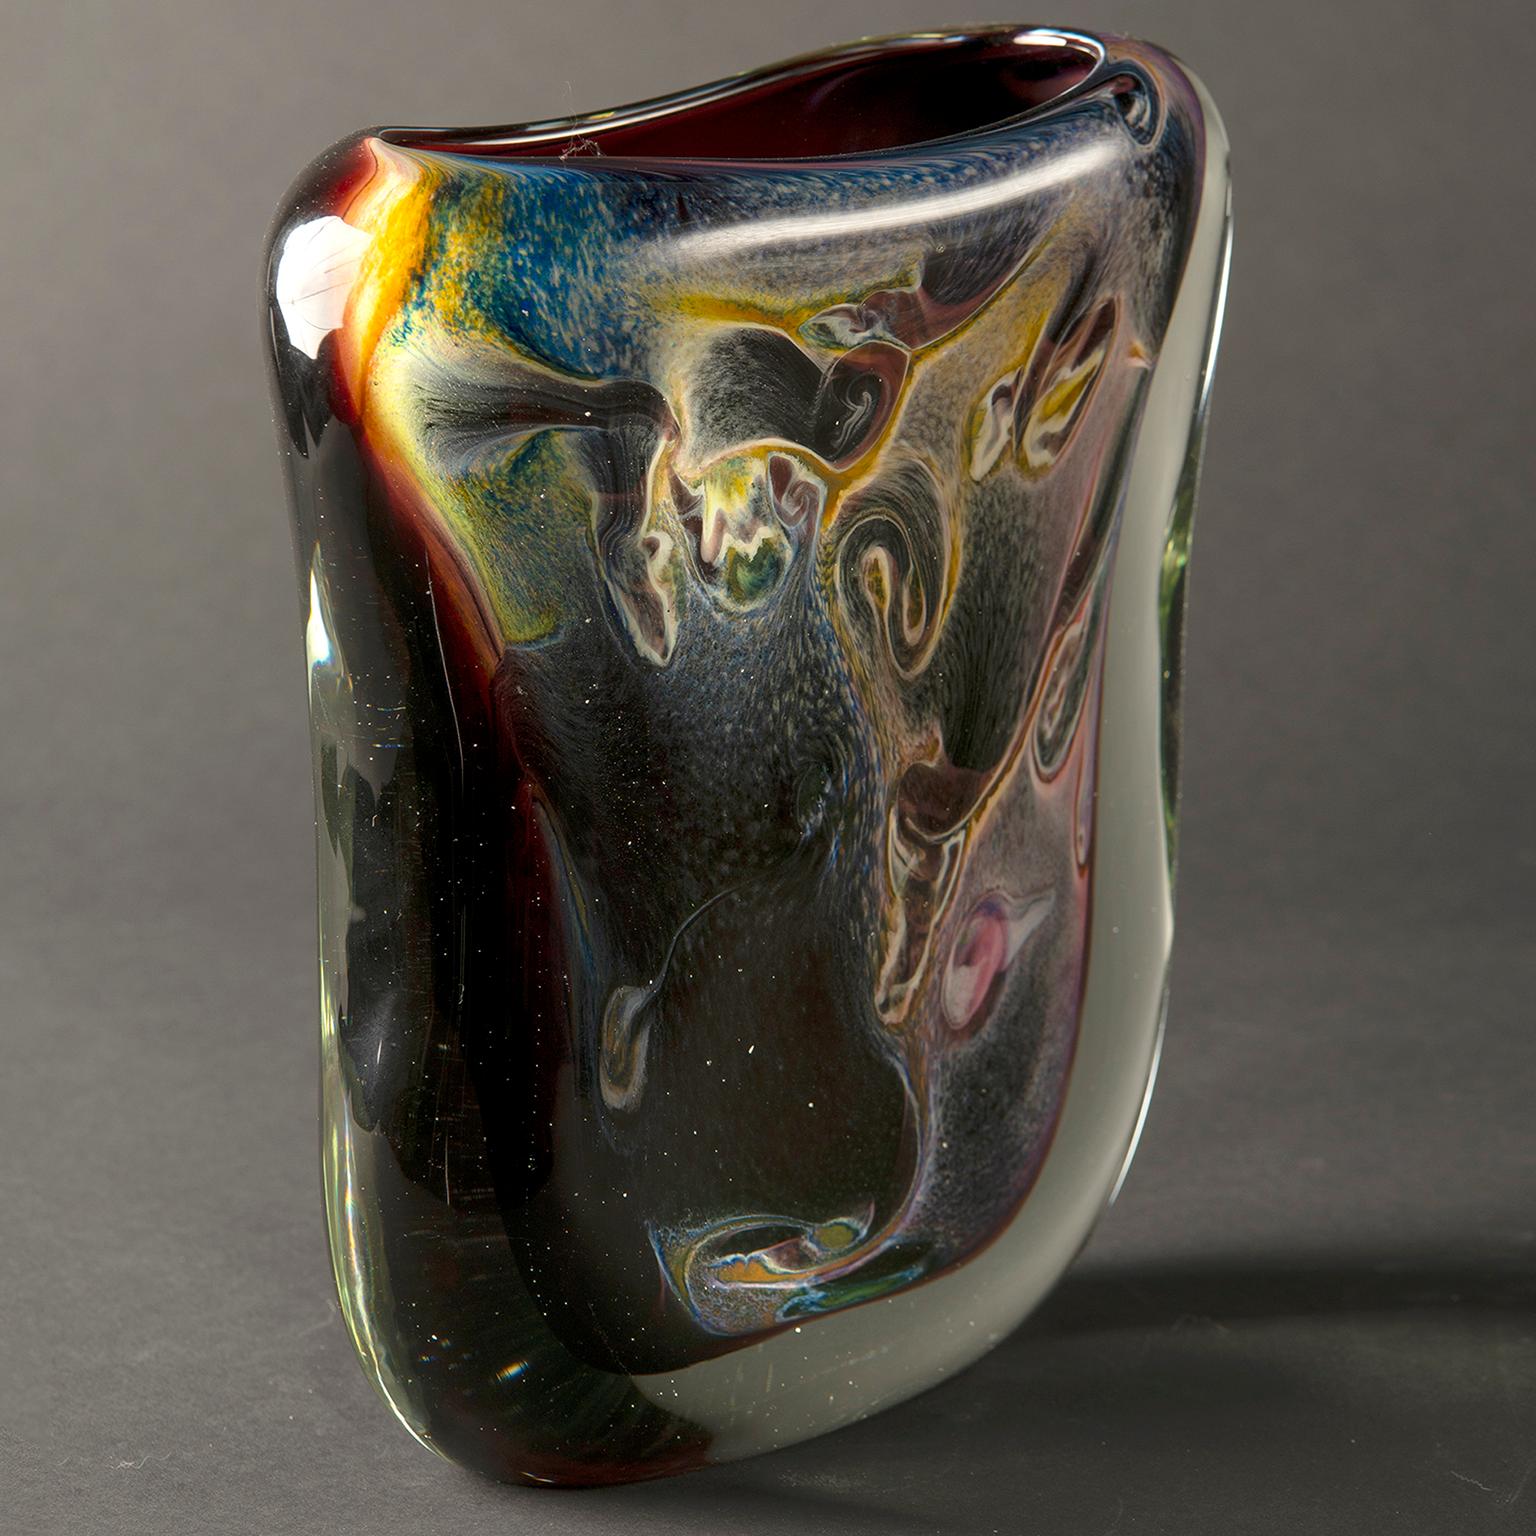 Vase contemporain en verre de Murano de style Sommerso avec une enveloppe en verre épais et transparent sur de riches nuances tourbillonnantes d'améthyste, d'or et de saphir avec des inclusions d'or. Fabricant inconnu - non signé.